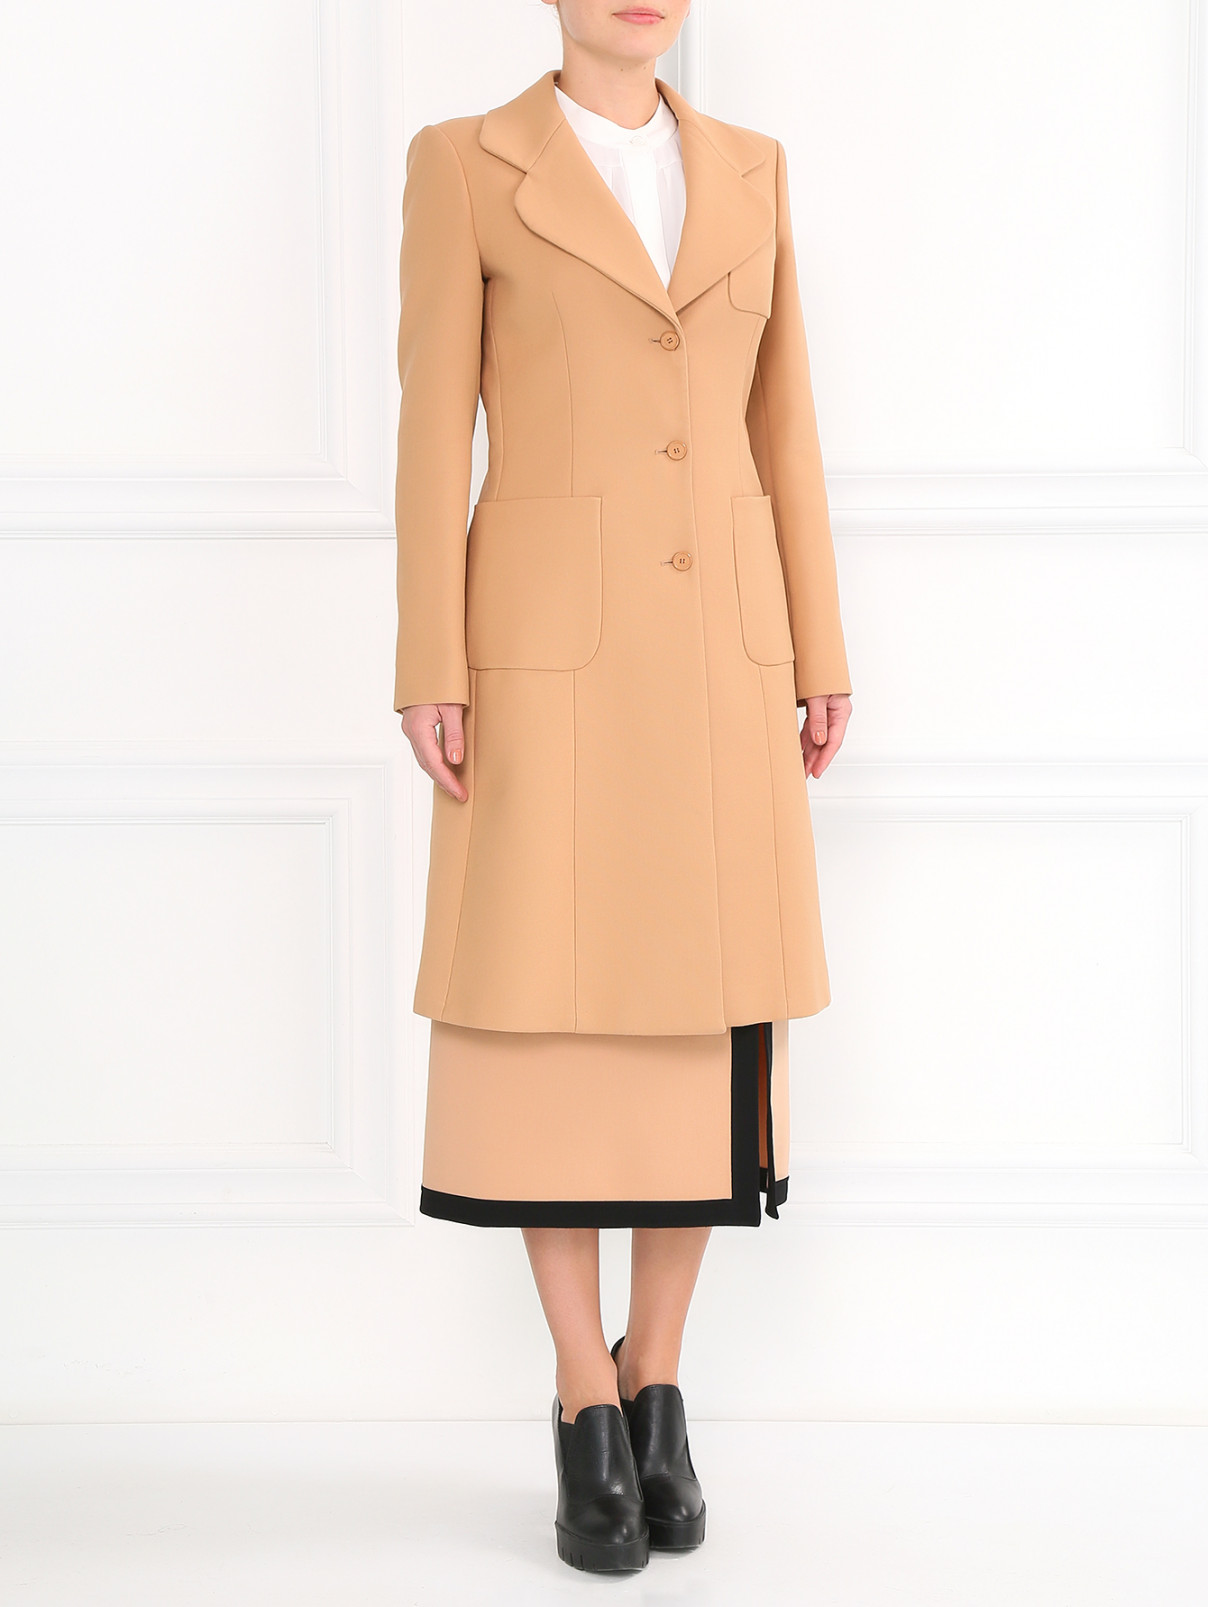 Пальто из хлопка с боковыми карманами Michael Kors  –  Модель Общий вид  – Цвет:  Коричневый